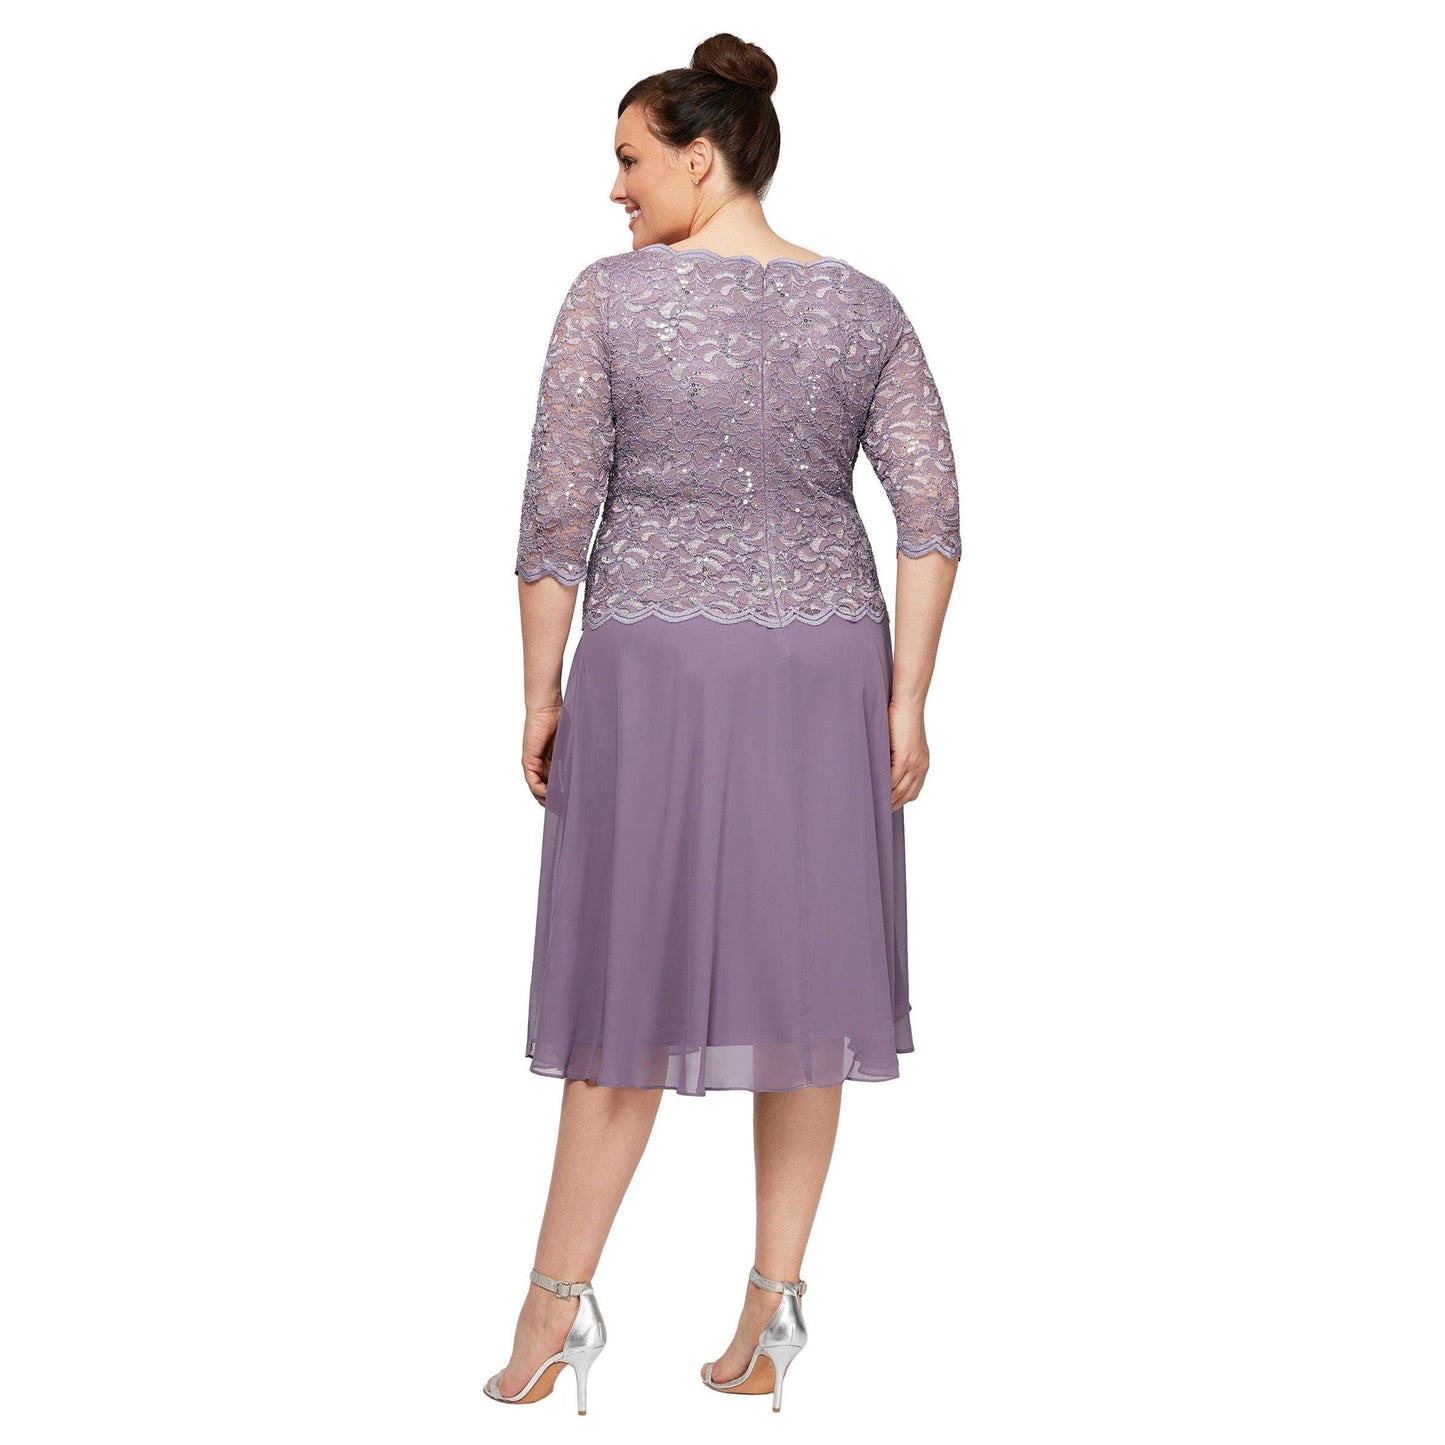 Alex Evenings Short Plus Size Chiffon Dress 4121796 - The Dress Outlet